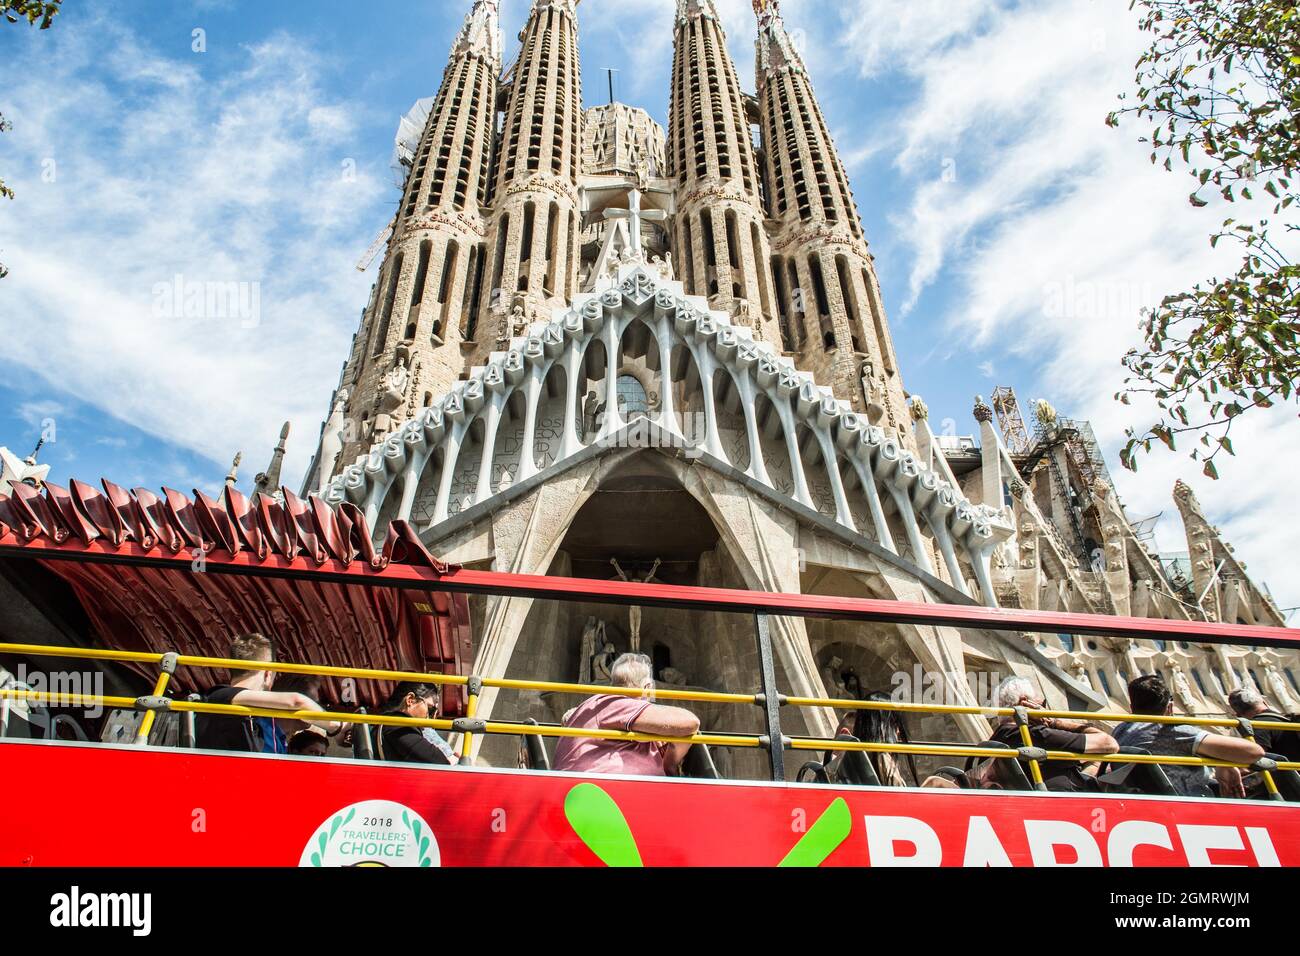 Barcelone, Catalogne, Espagne. 20 septembre 2021. Le bus de la visite de la ville de Barcelone est visible en face de la basilique de la Sagrada família à Barcelone. (Image de crédit : © Thiago Prudencio/DAX via ZUMA Press Wire) Banque D'Images